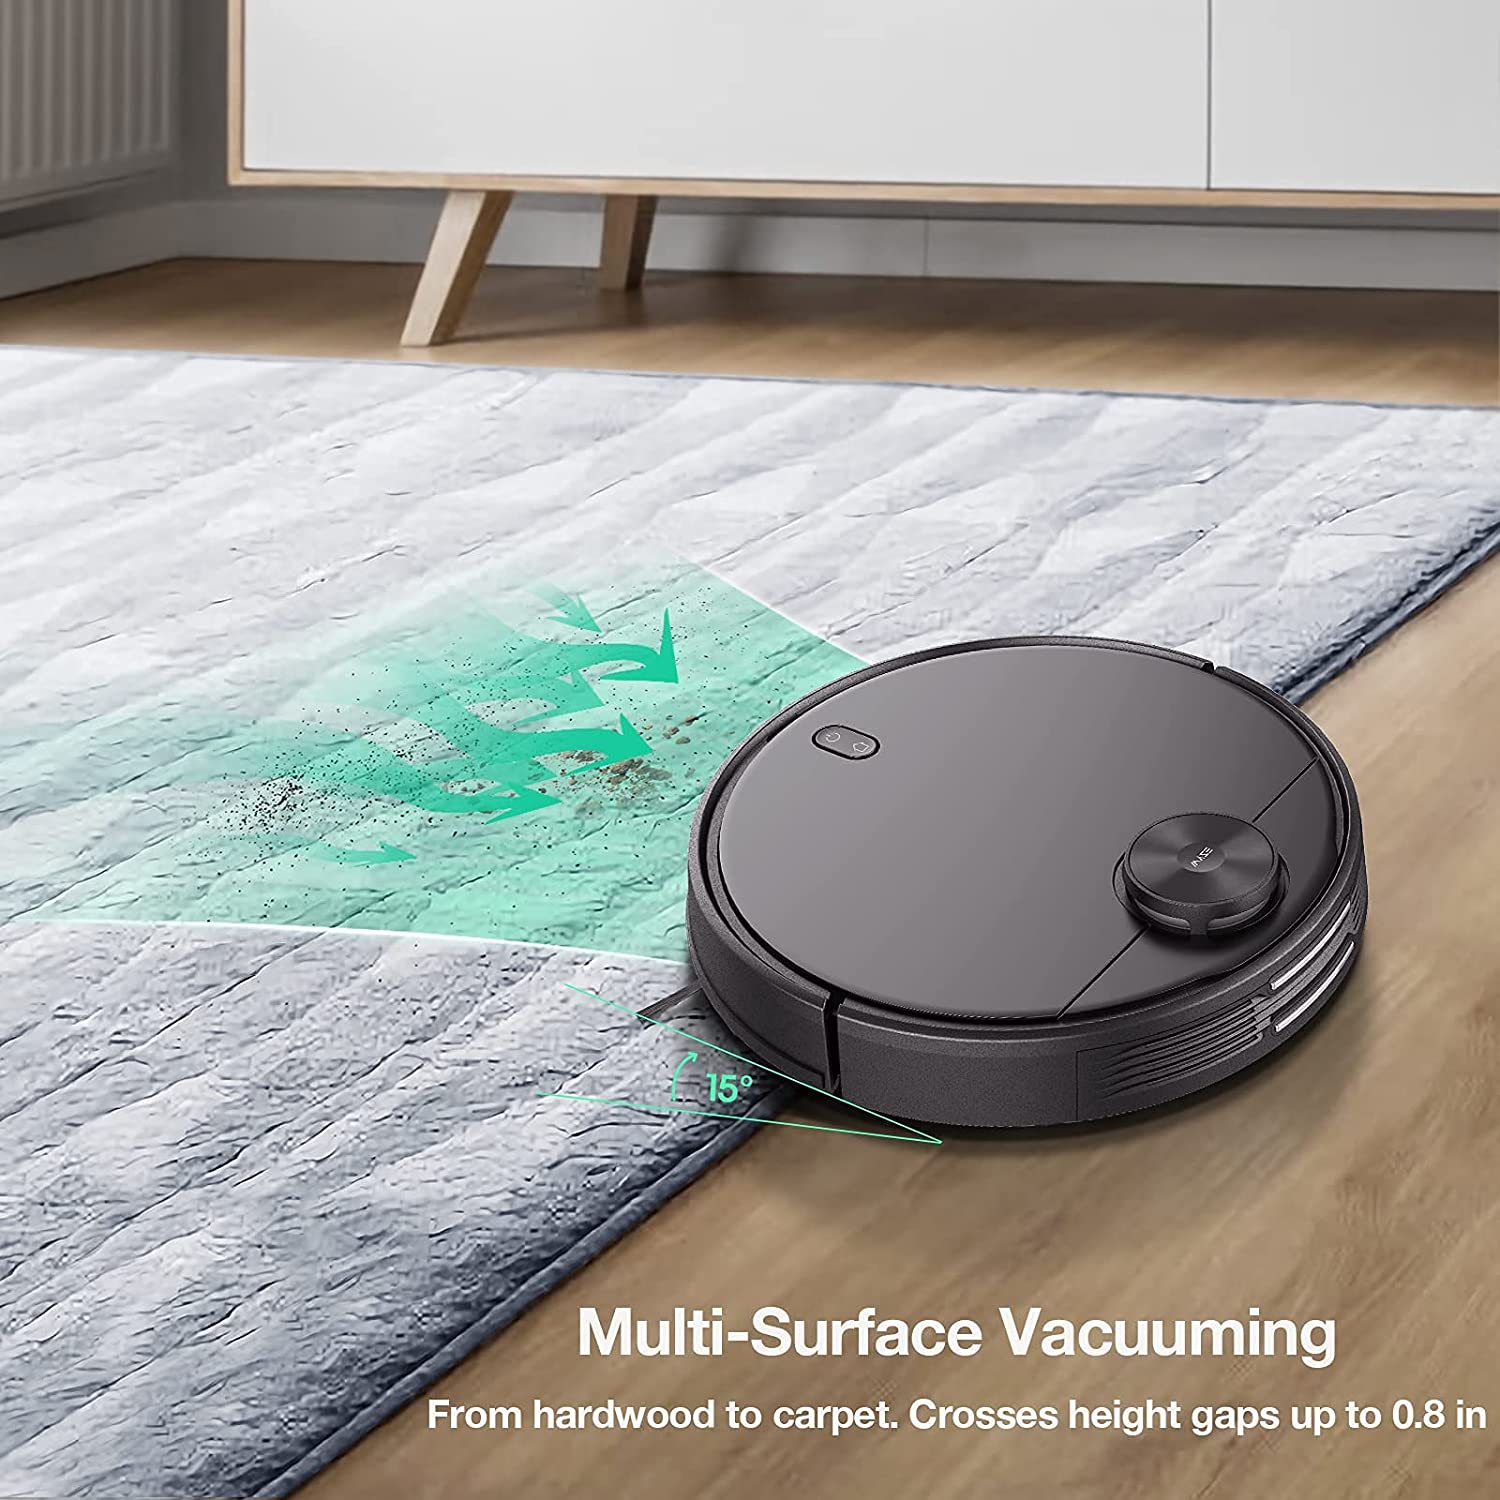 best robotic vacuum cleaner for lvp floors